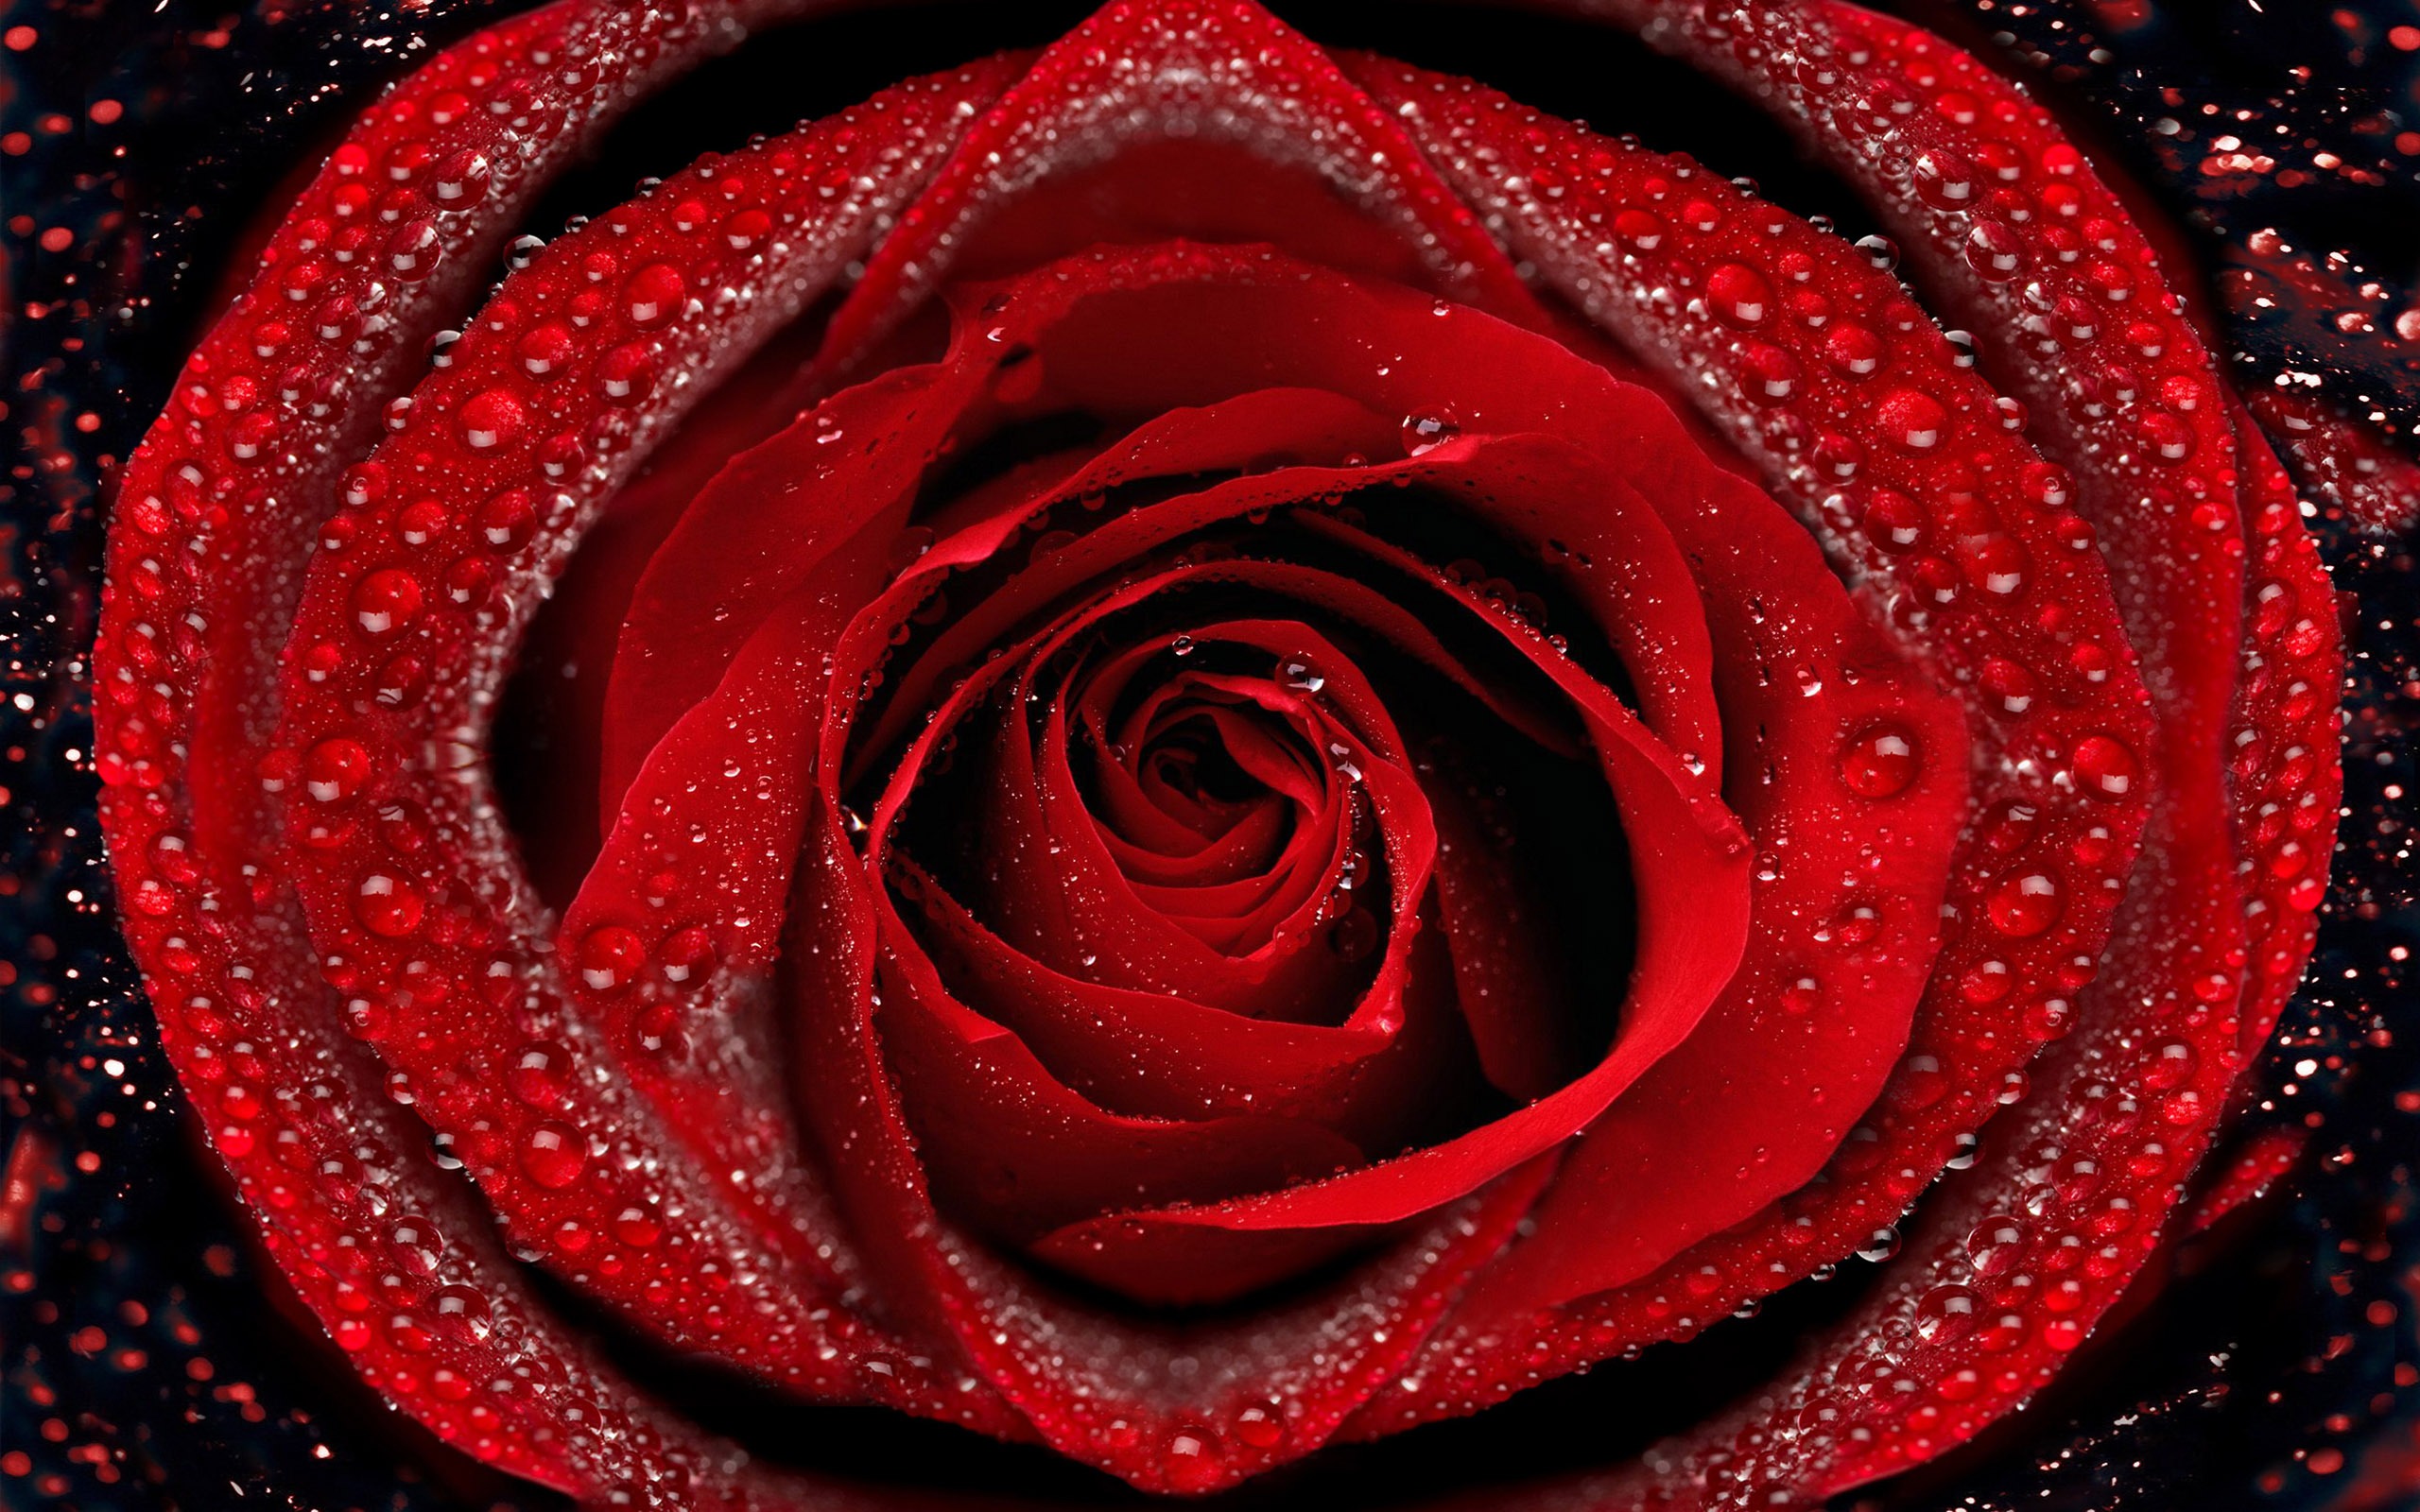 超大玫瑰写真 壁纸(六)2 - 2560x1600